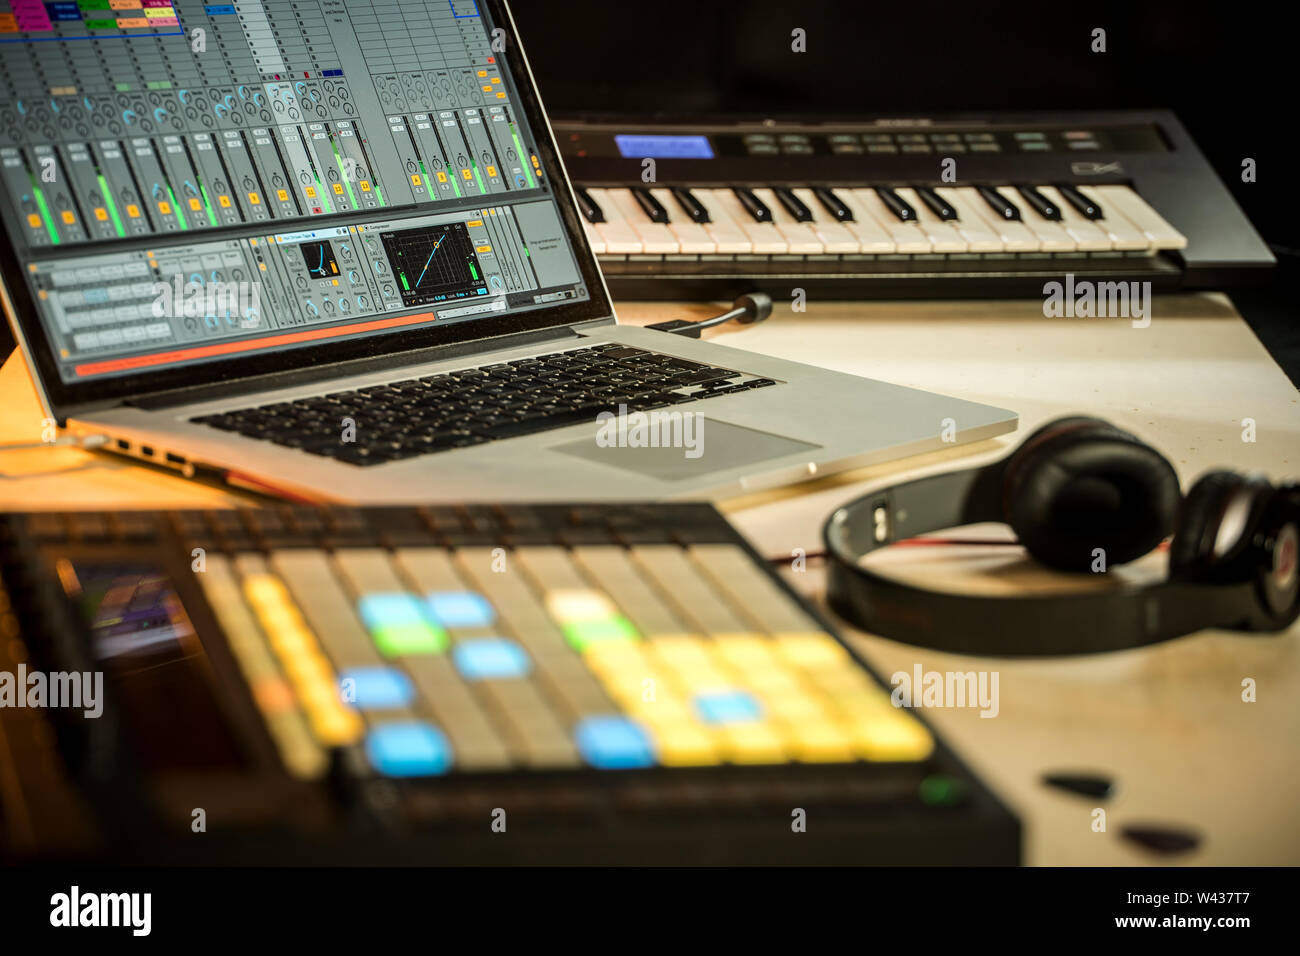 Musica elettronica di produzione. Apple Macbook con Ableton Live music software, spingere midi pad controller, le cuffie Beats e Yamaha Tastiera synth Foto Stock